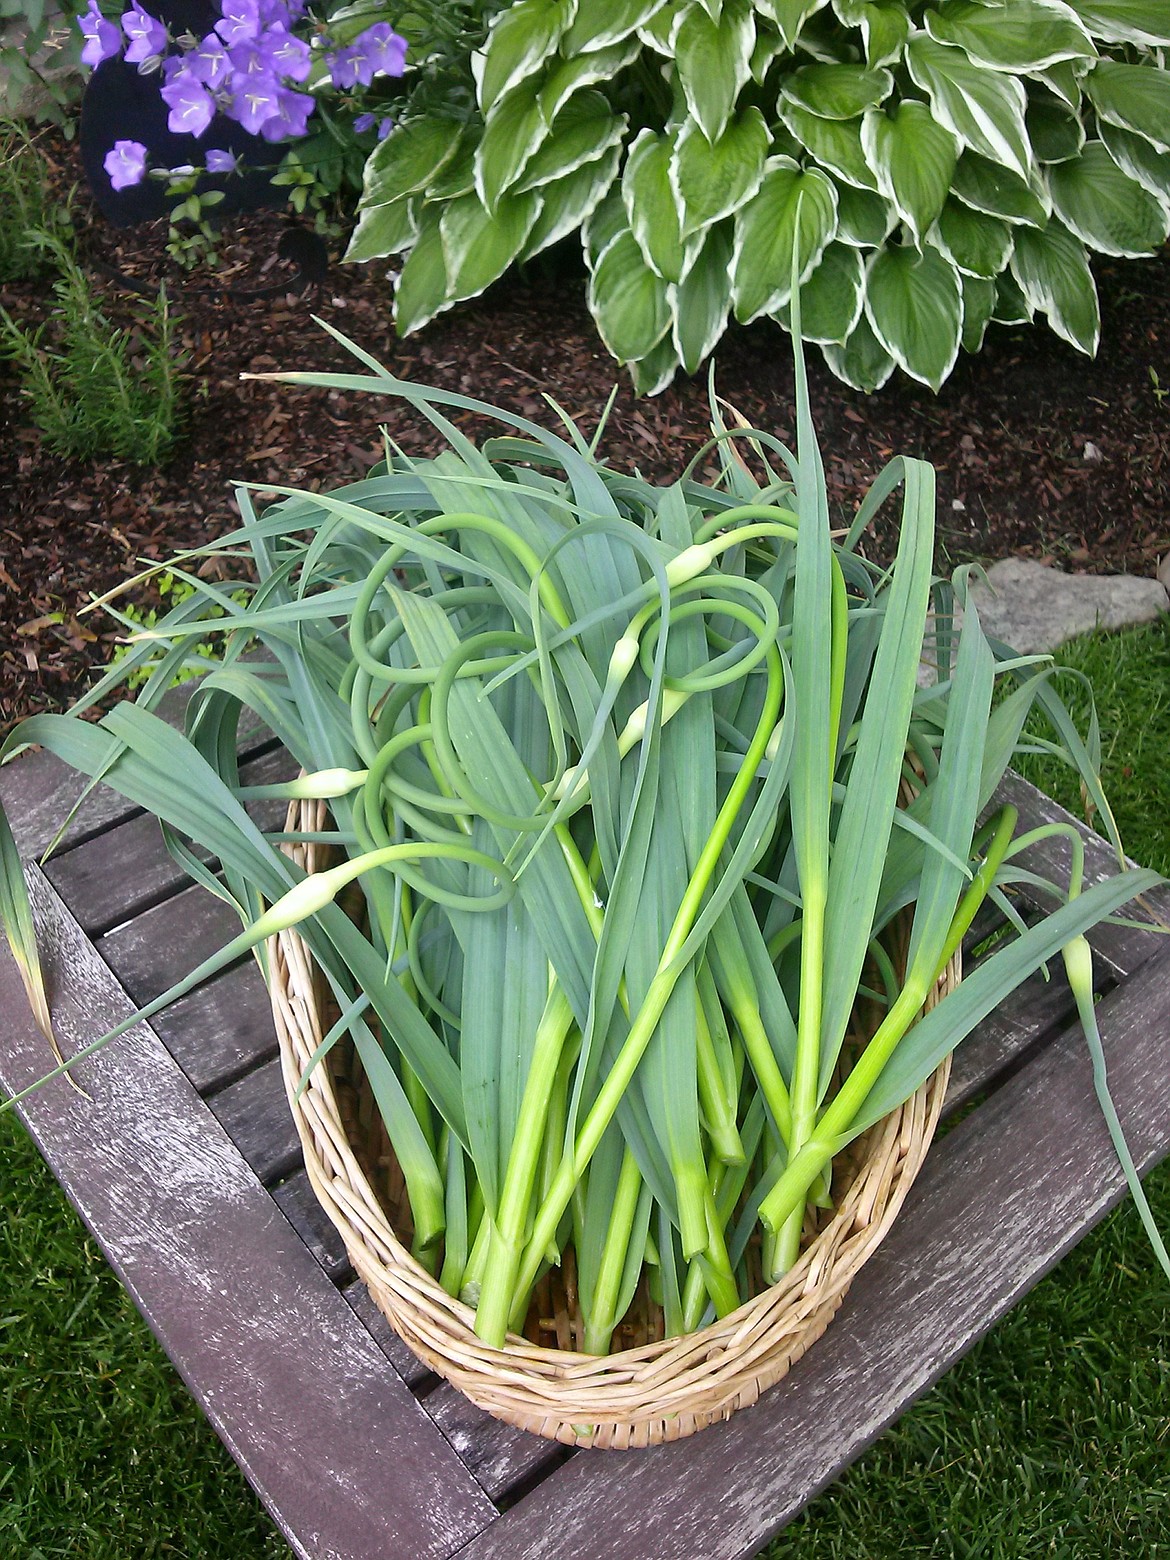 Hardneck garlic has a stiff center stalk called a scape.